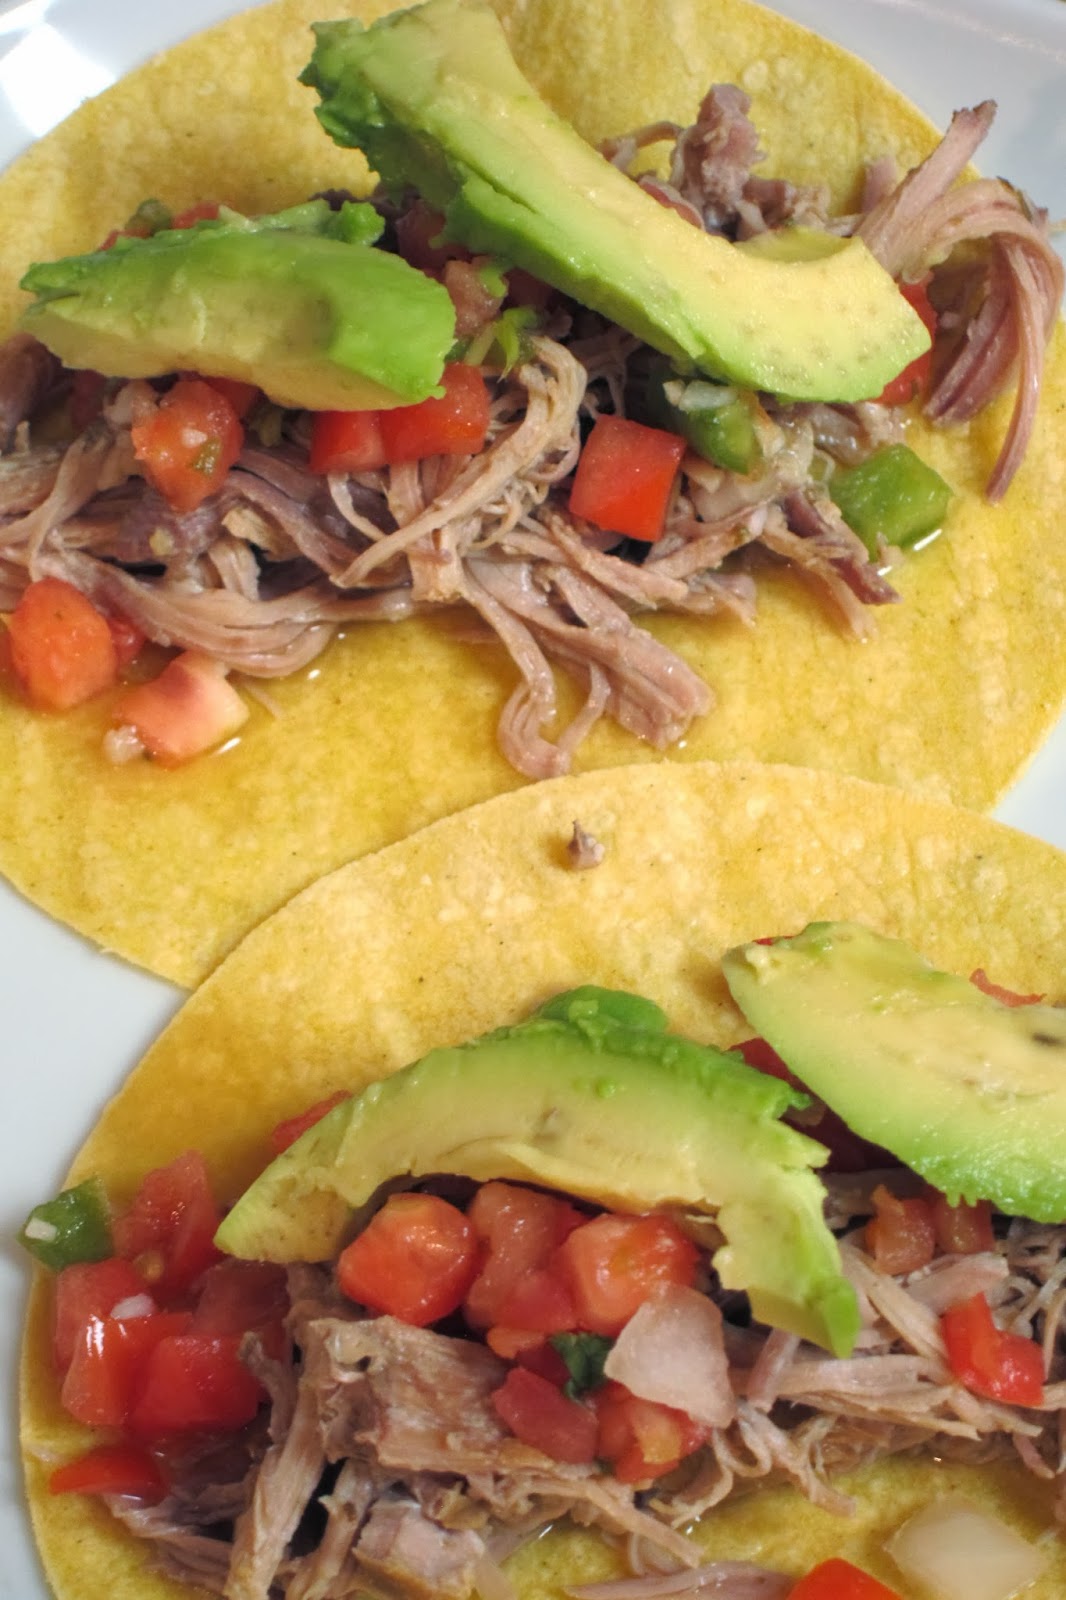 Inspired Whims: Slow Cooker Puerto Rican Shredded Pork Tacos